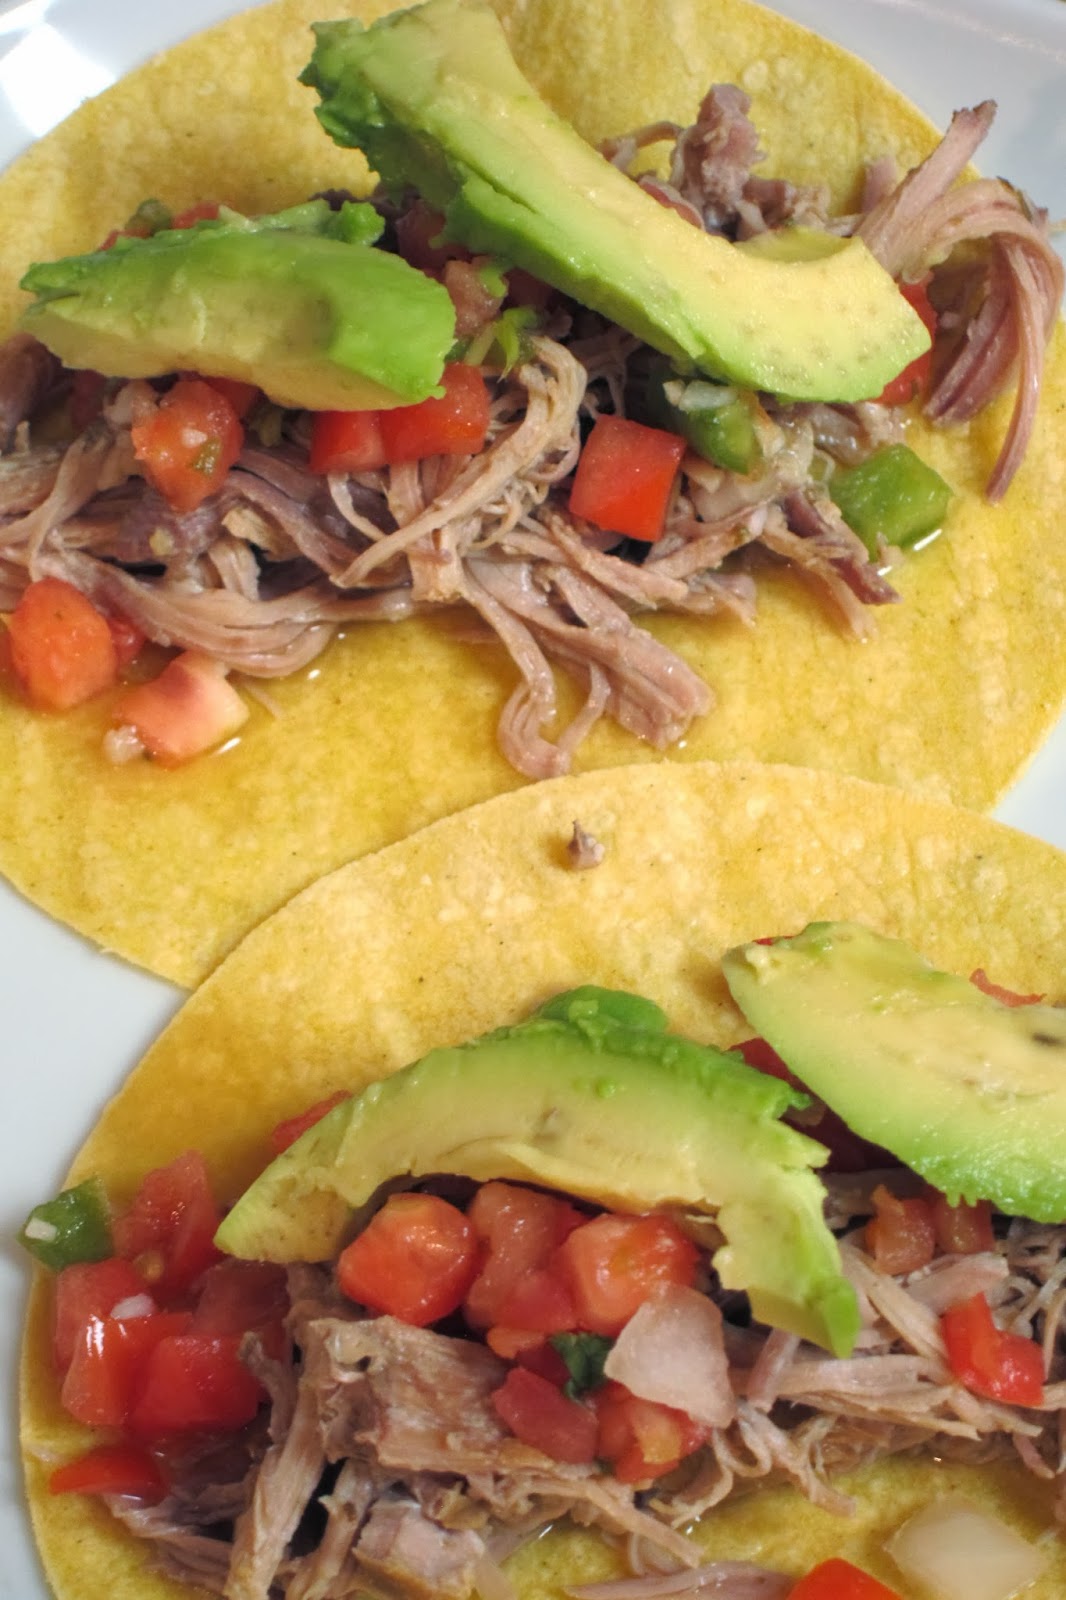 Inspired Whims: Slow Cooker Puerto Rican Shredded Pork Tacos